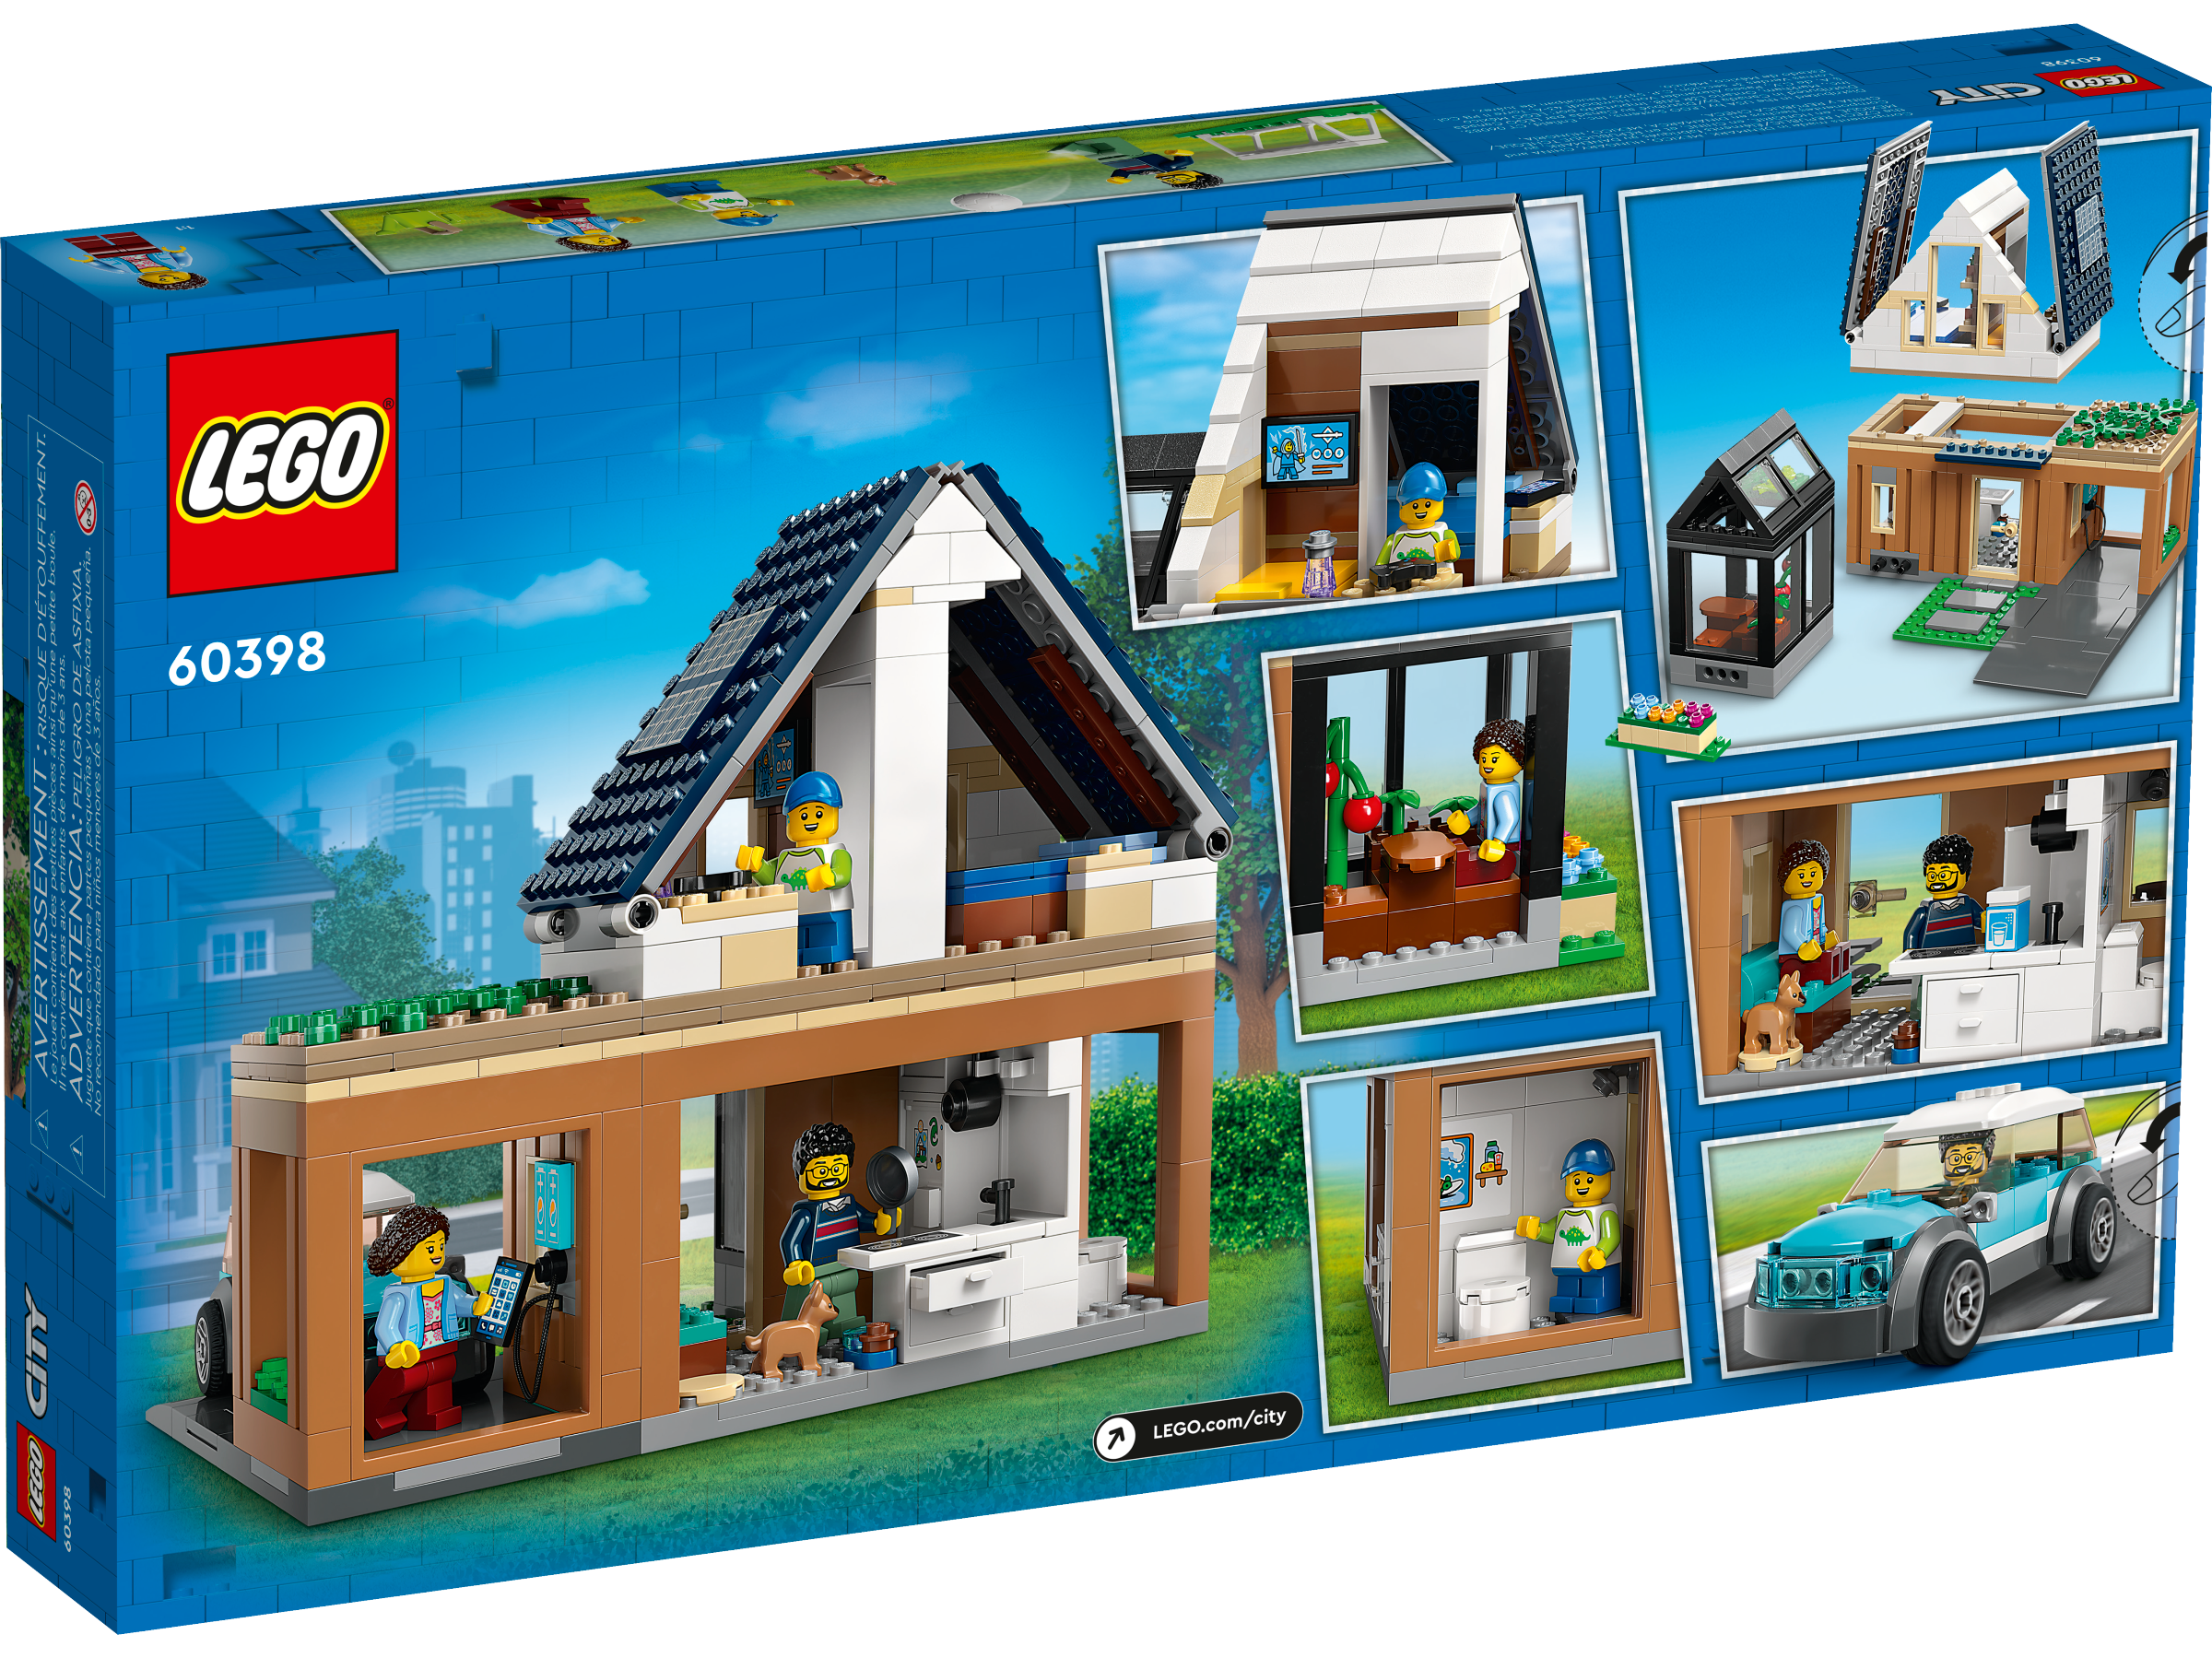 LEGO City La maison familiale et la voiture électrique 60398 Ensemble de  jeu de construction (462 pièces)